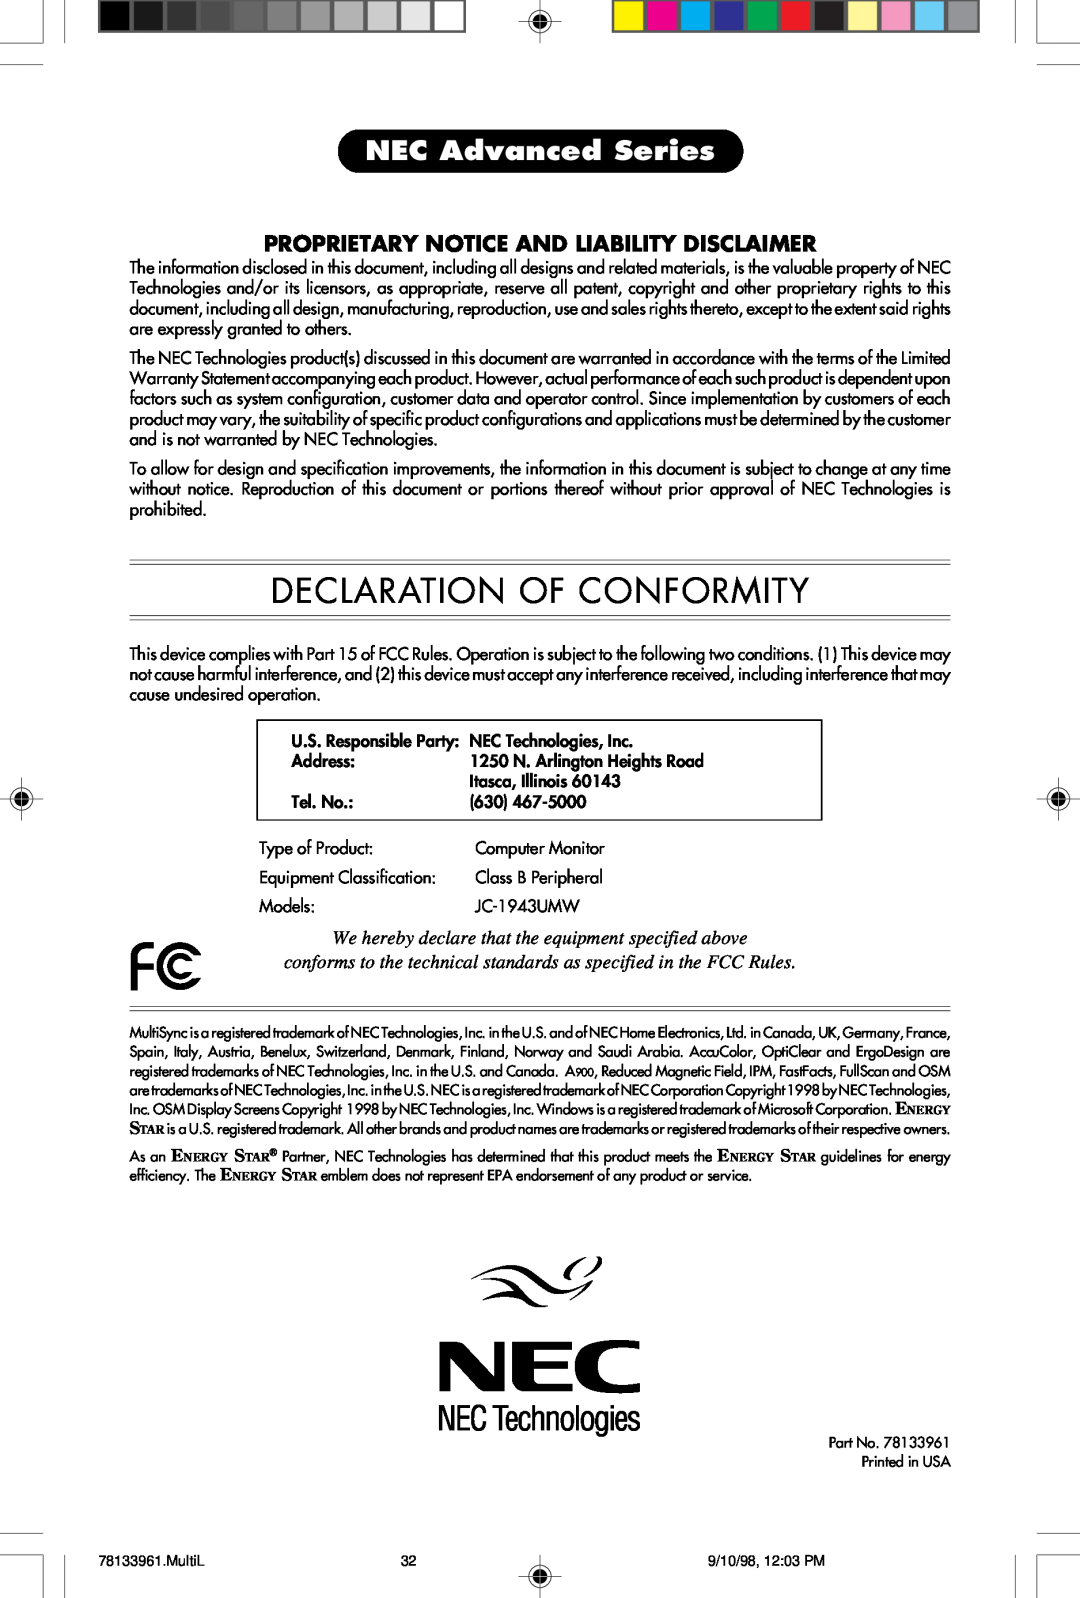 NEC A900 user manual Declaration Of Conformity, NEC Advanced Series 